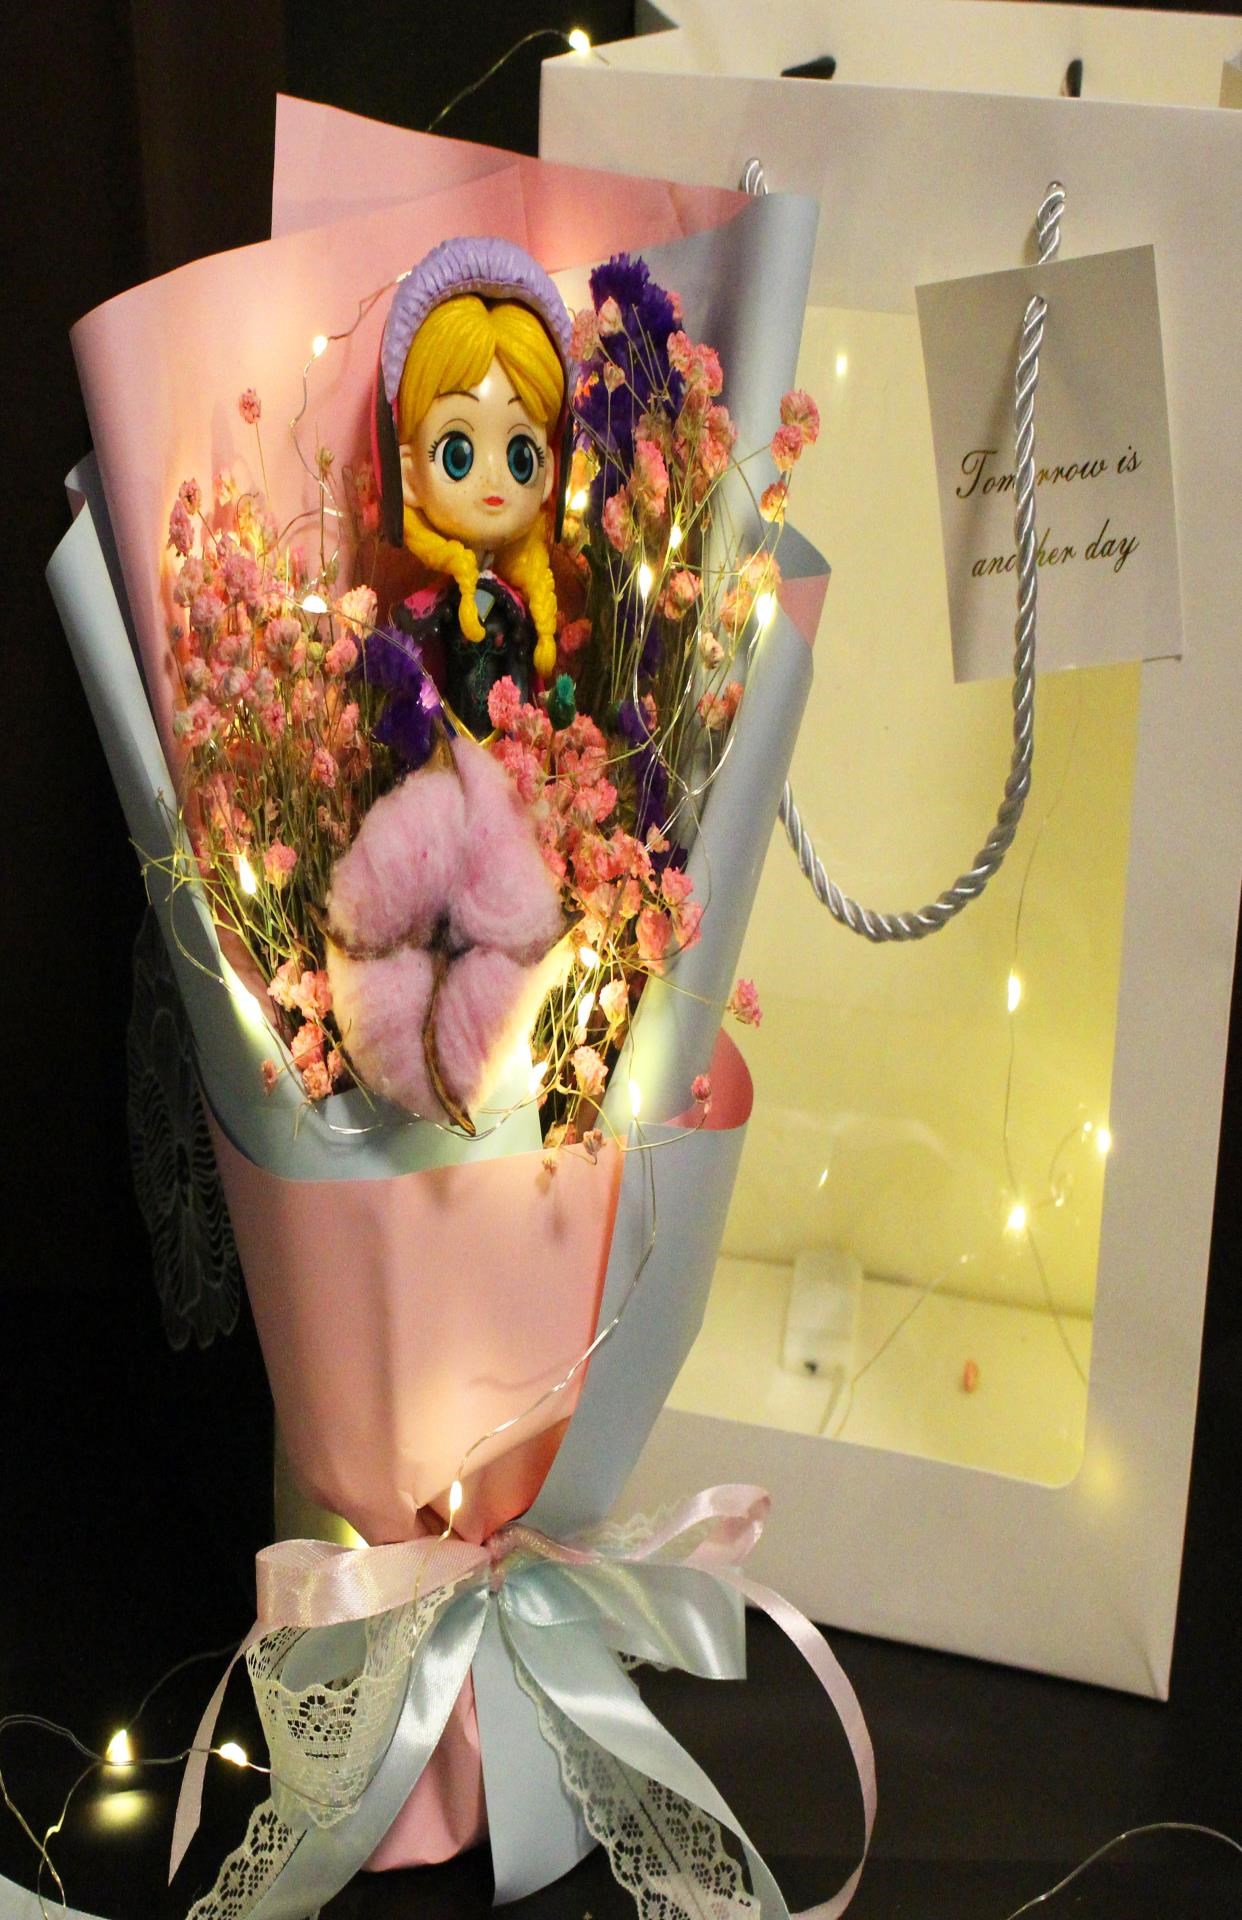 Bó hoa dành cho trẻ em Bạch tuyết Nàng tiên cá Bó hoa hoạt hình cho bạn gái Bé gái ngày lễ tình nhân Quà tặng sinh nhật - Hoa hoạt hình / Hoa sô cô la